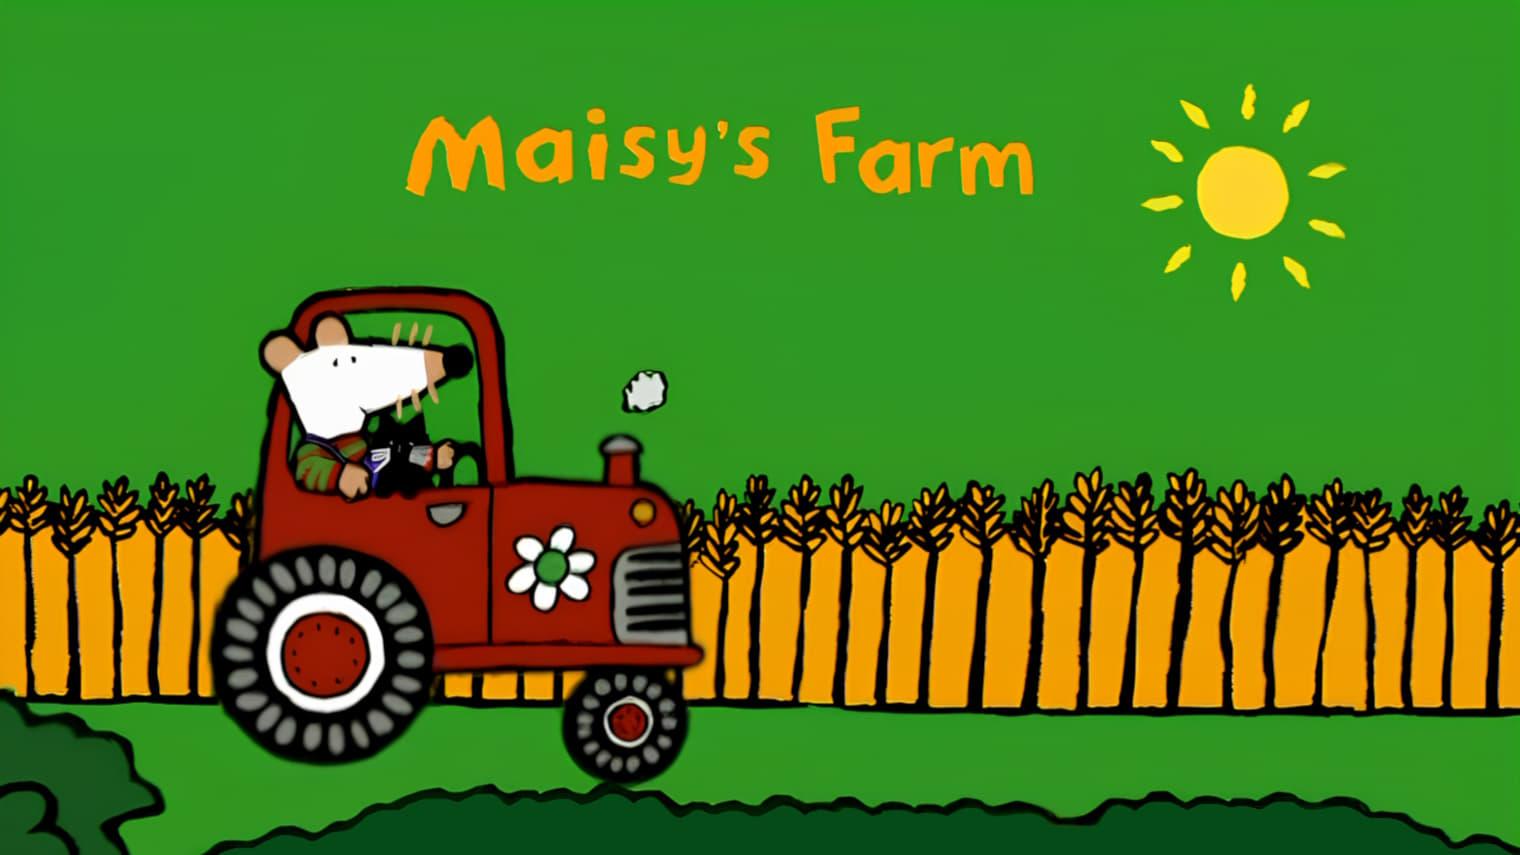 Maisy's Farm backdrop